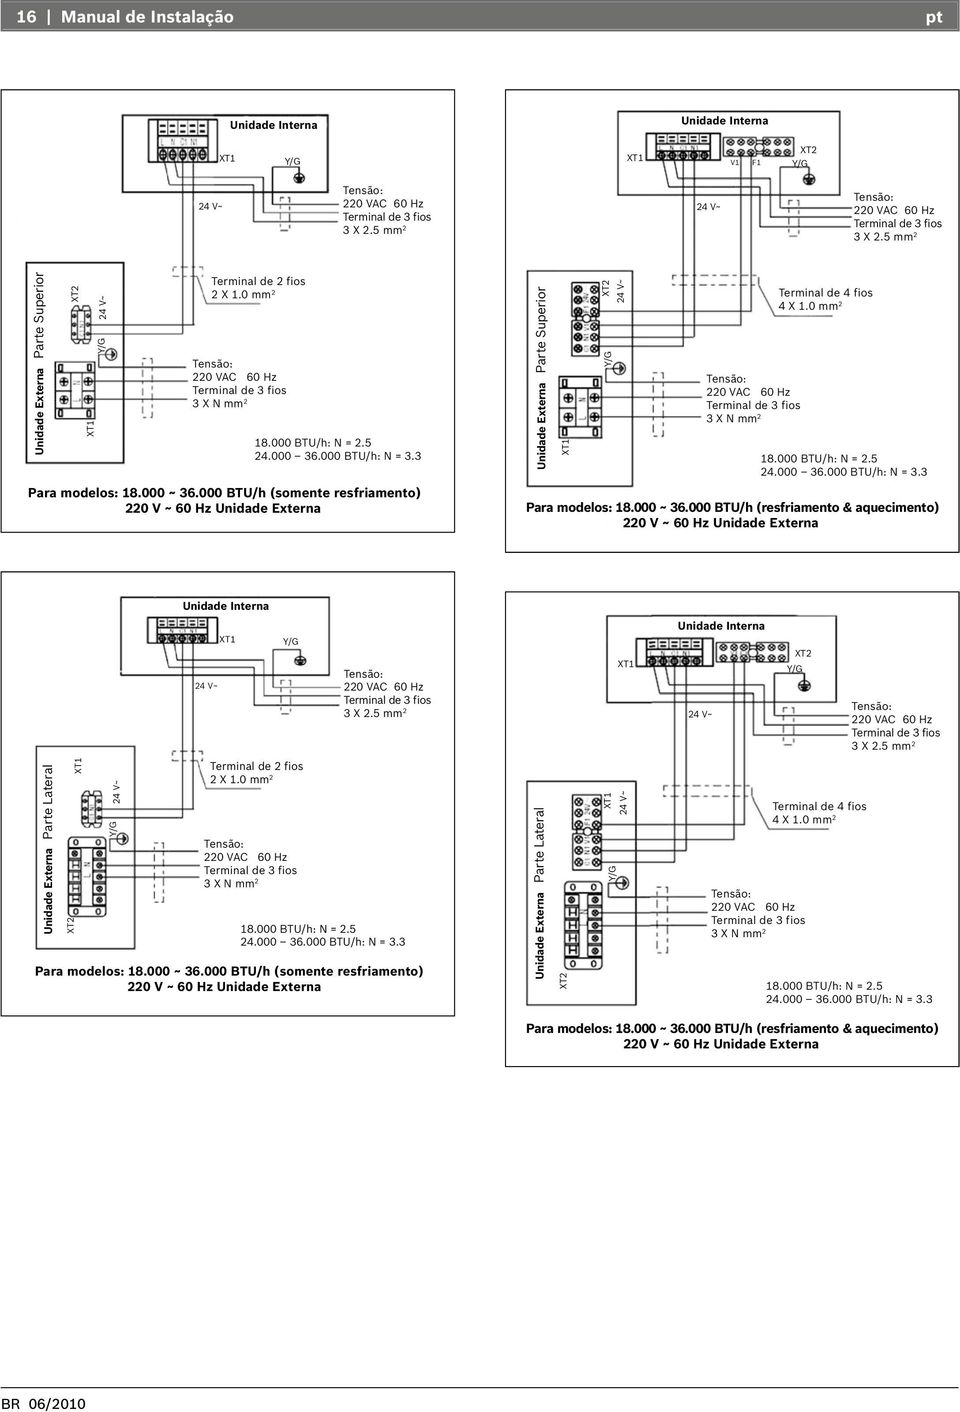 000 ~ 36.000 BTU/h (somente resfriamento) 220 V ~ 60 Hz Unidade Externa Unidade Externa Parte Superior XT2 24 V~ 220 VAC 60 Hz Terminal de 3 fios 3 X N mm 2 Terminal de 4 fios 4 X 1.0 mm 2 18.